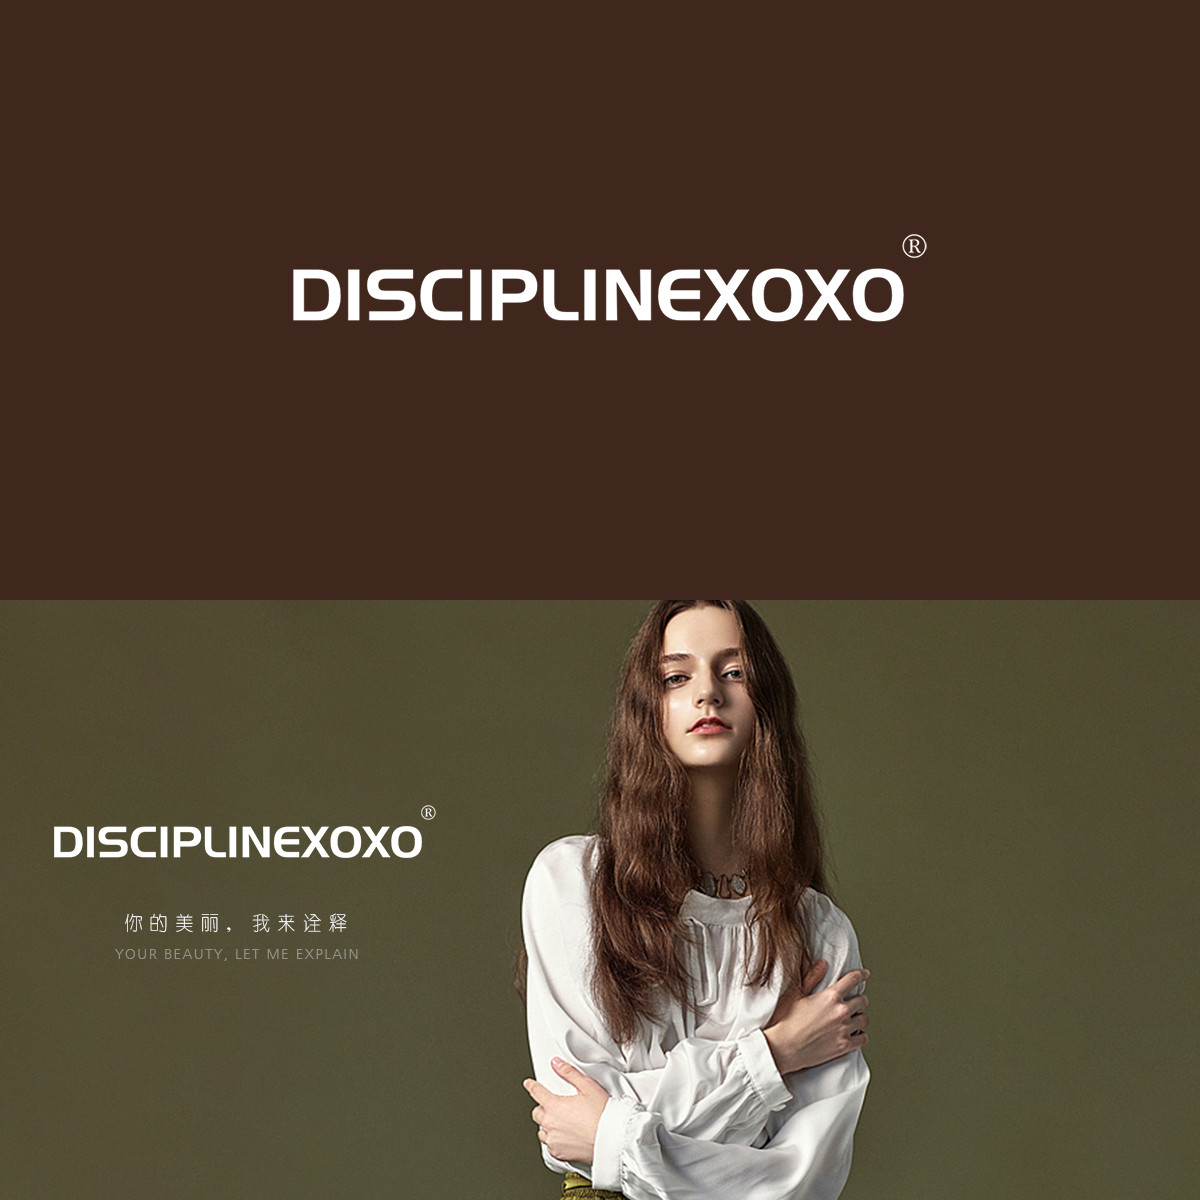 DISCIPLINEXOXO